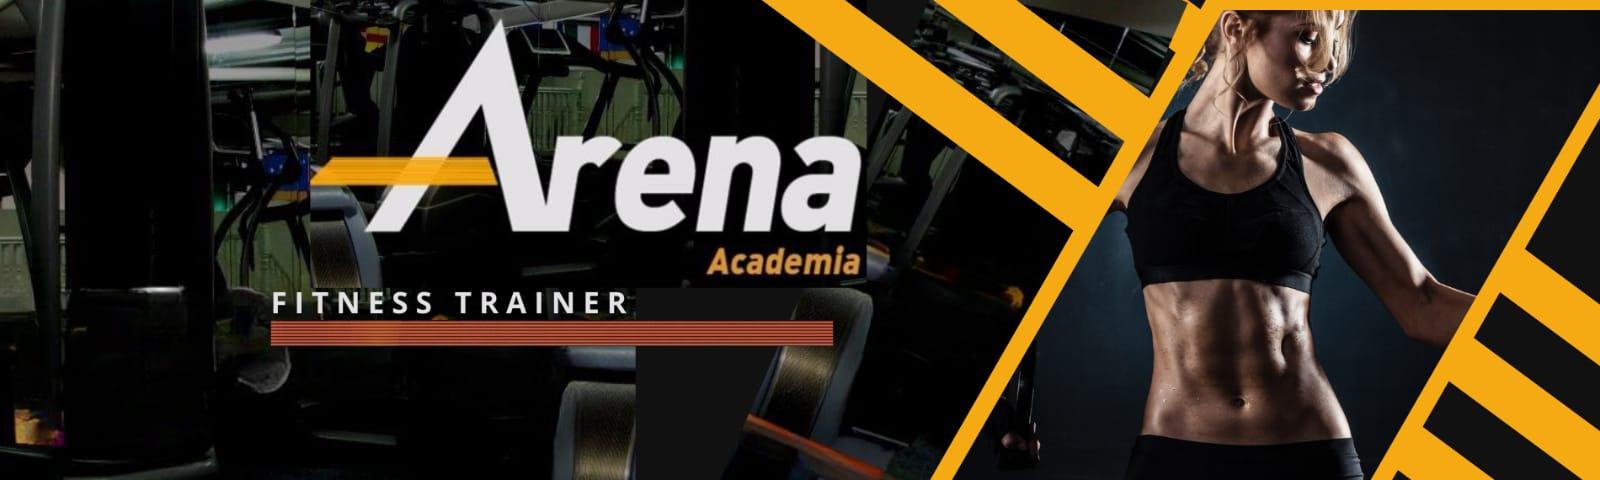 banner da empresa Arena Academia